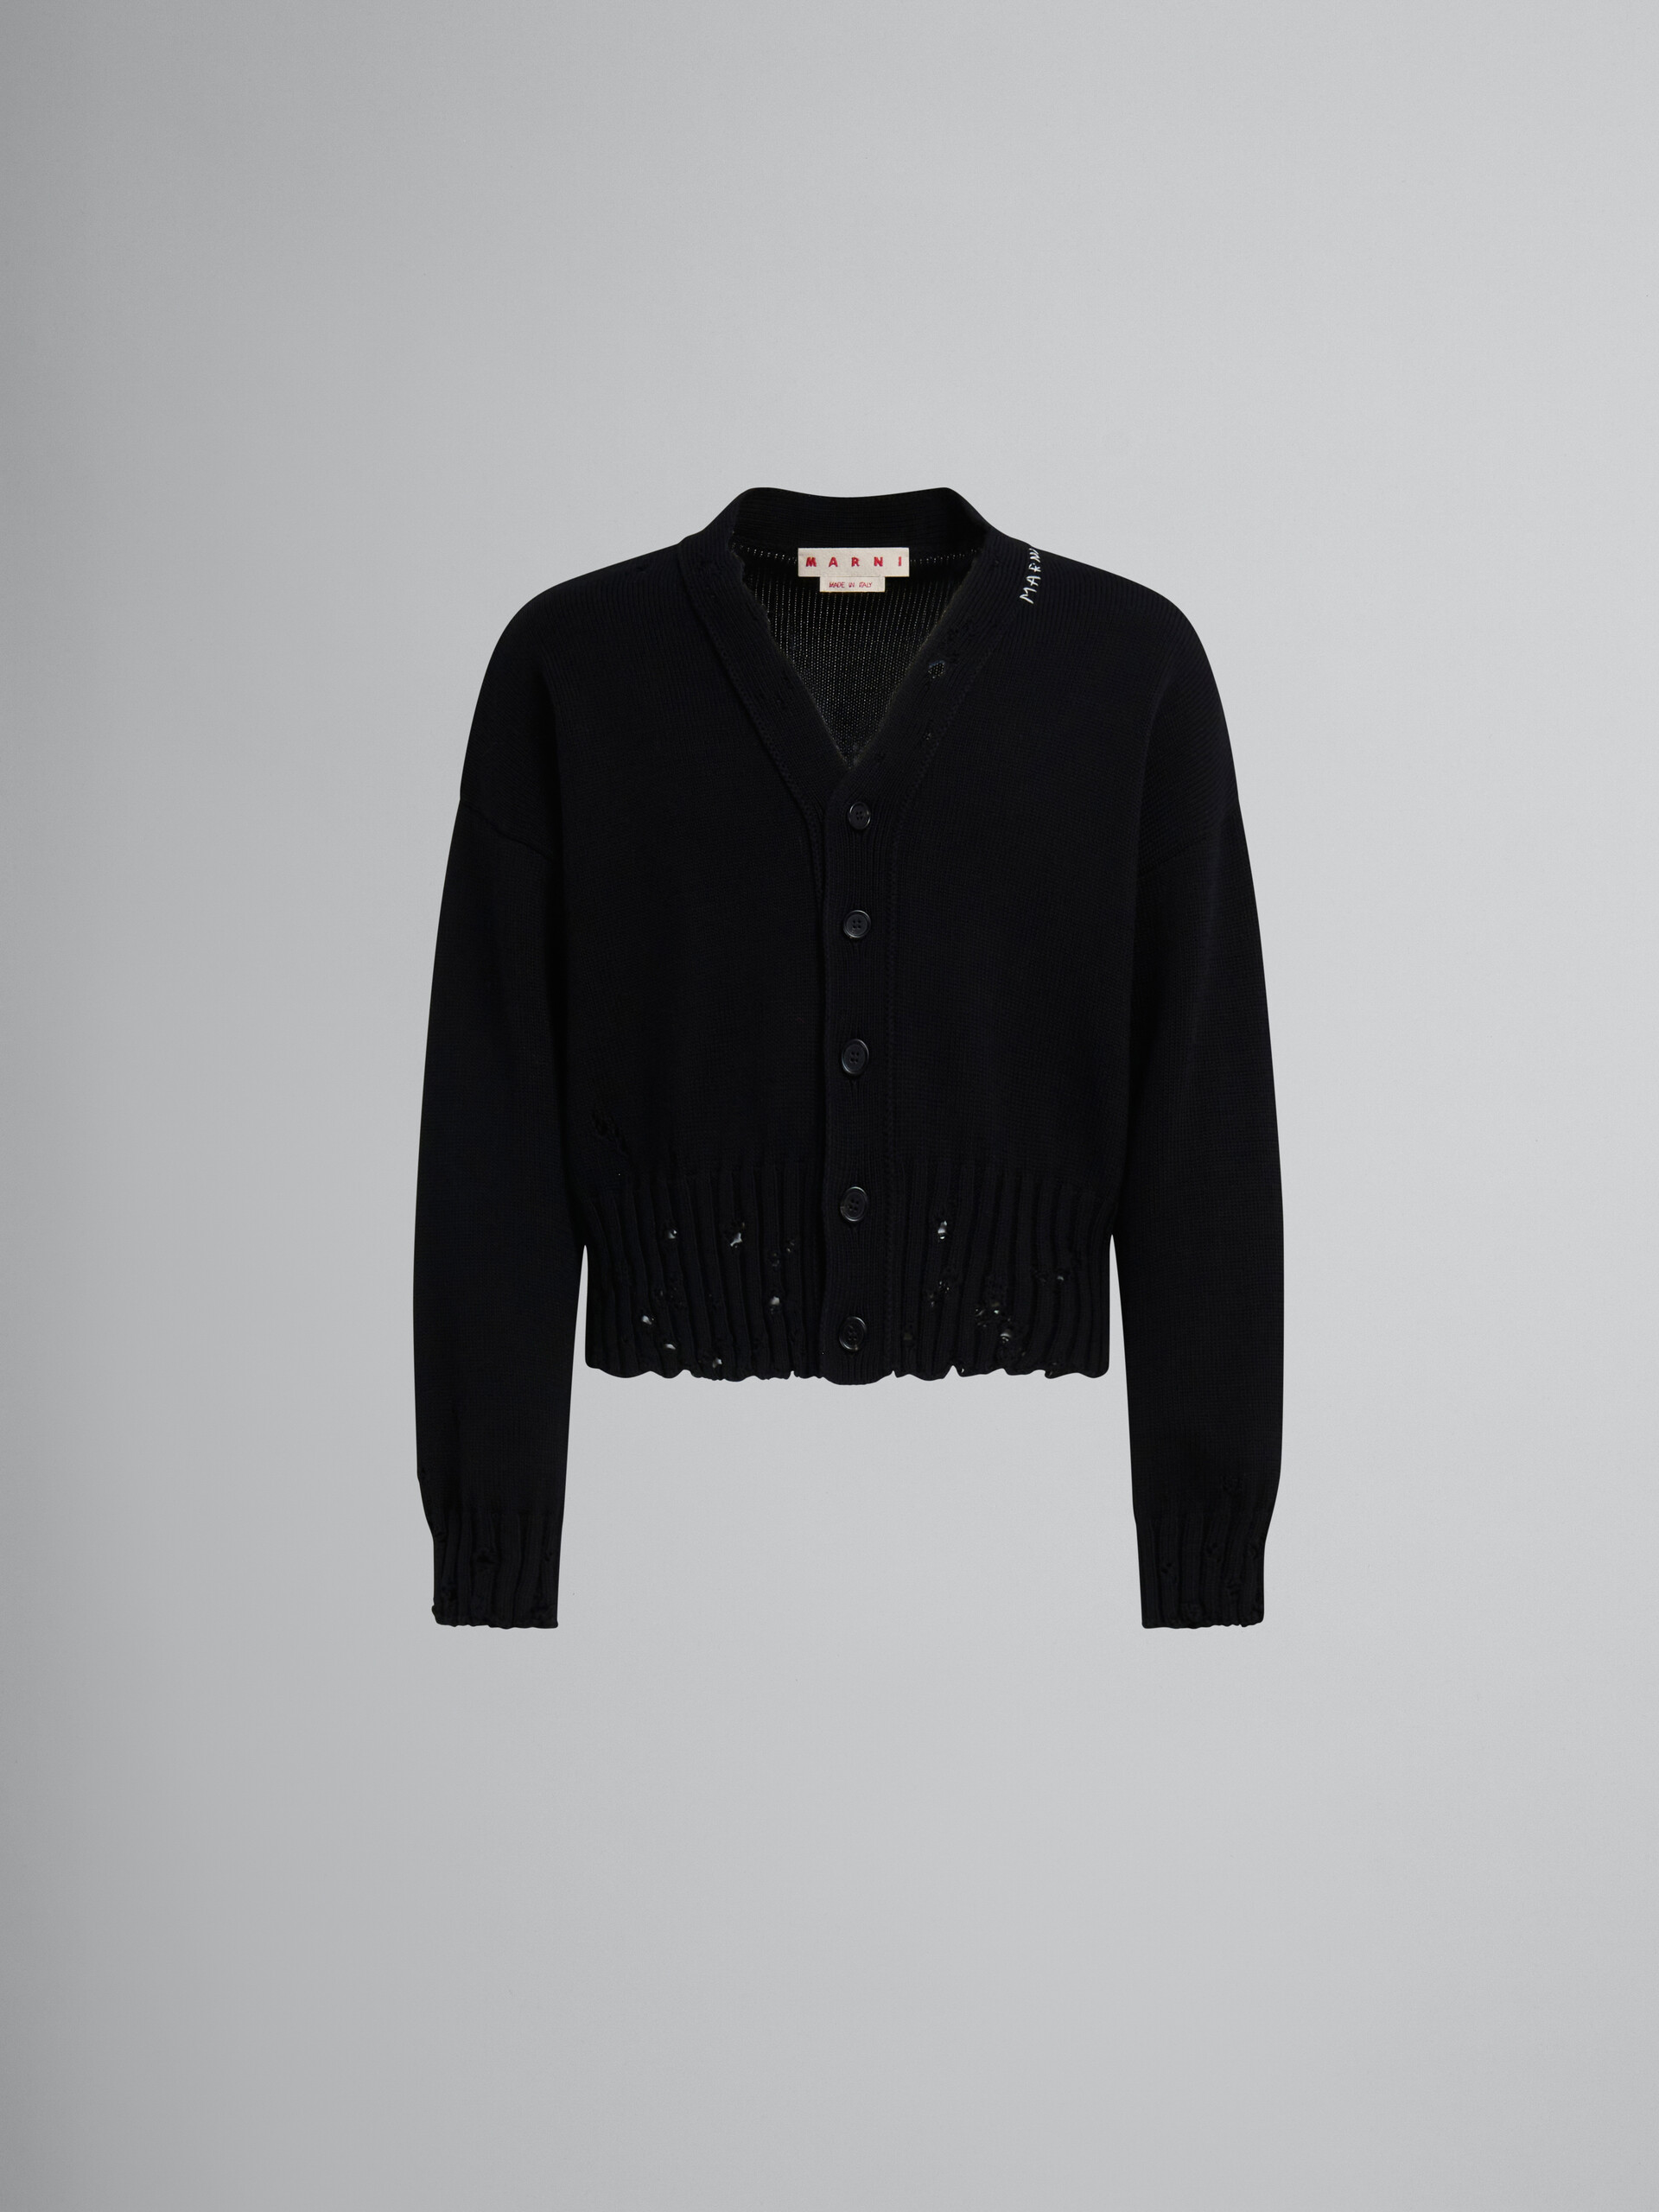 Cárdigan de algodón negro efecto ajado - jerseys - Image 1